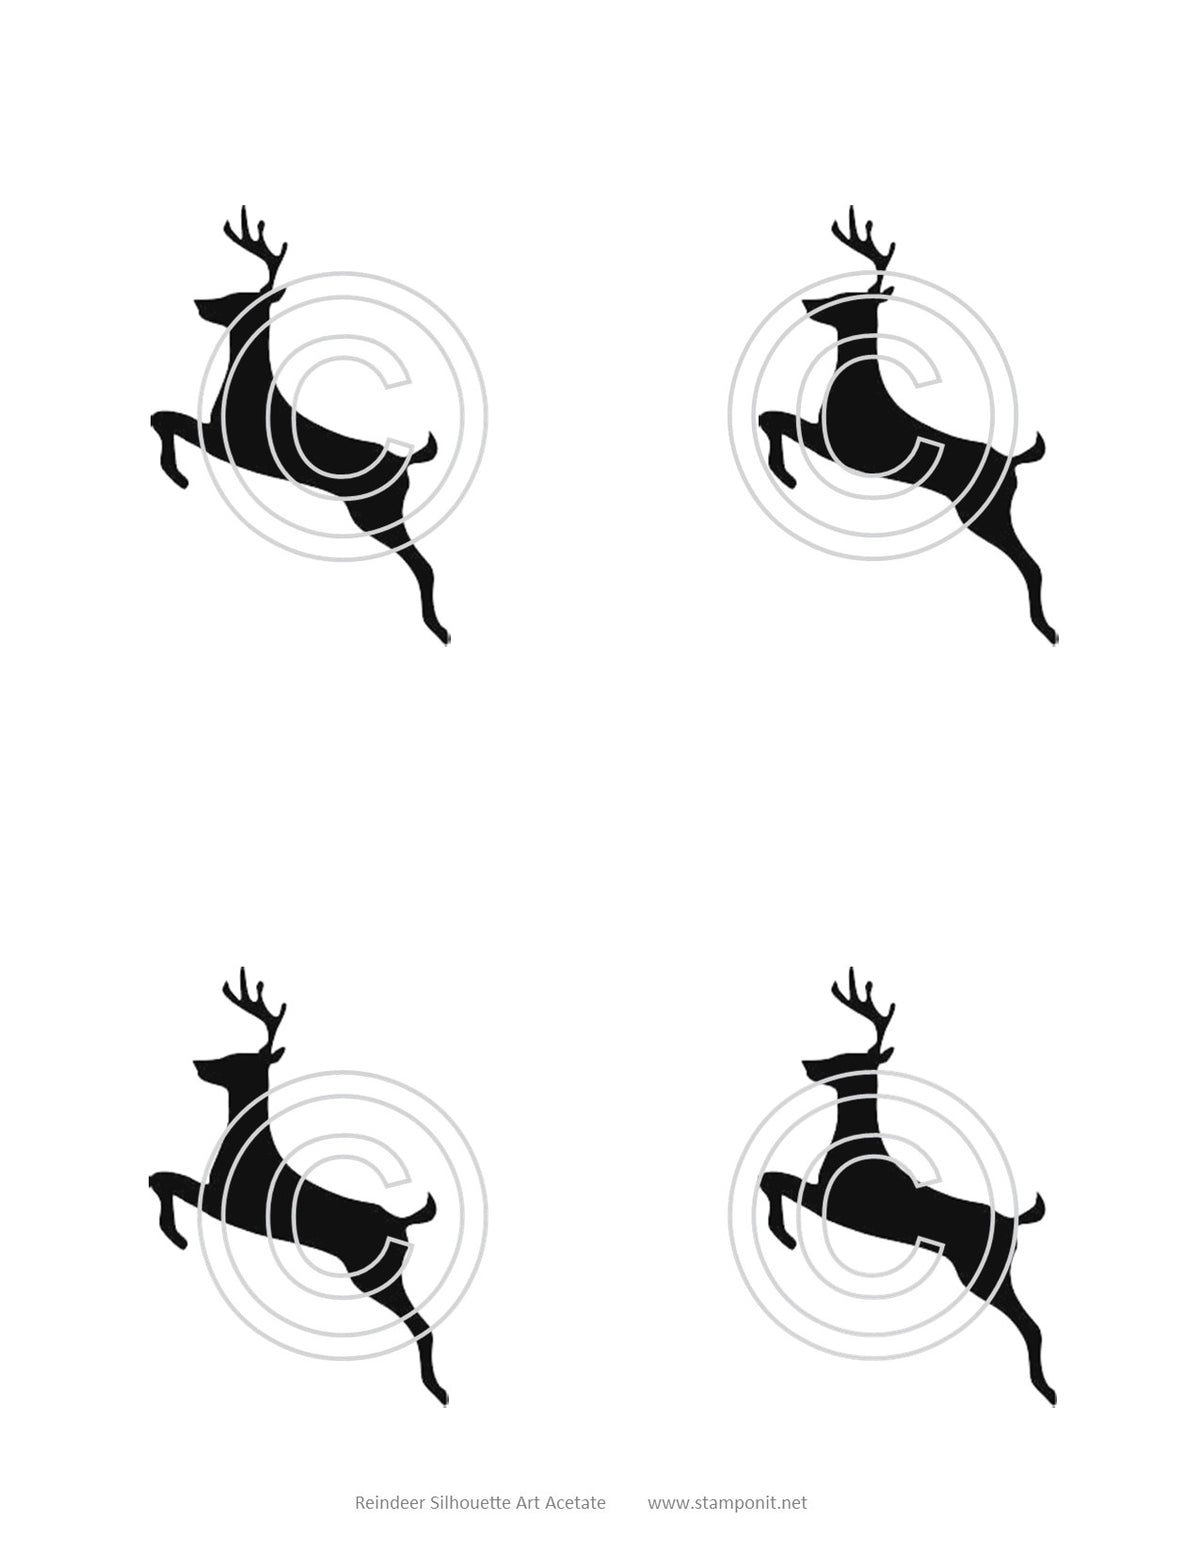 Reindeer Art Acetate Silhouette